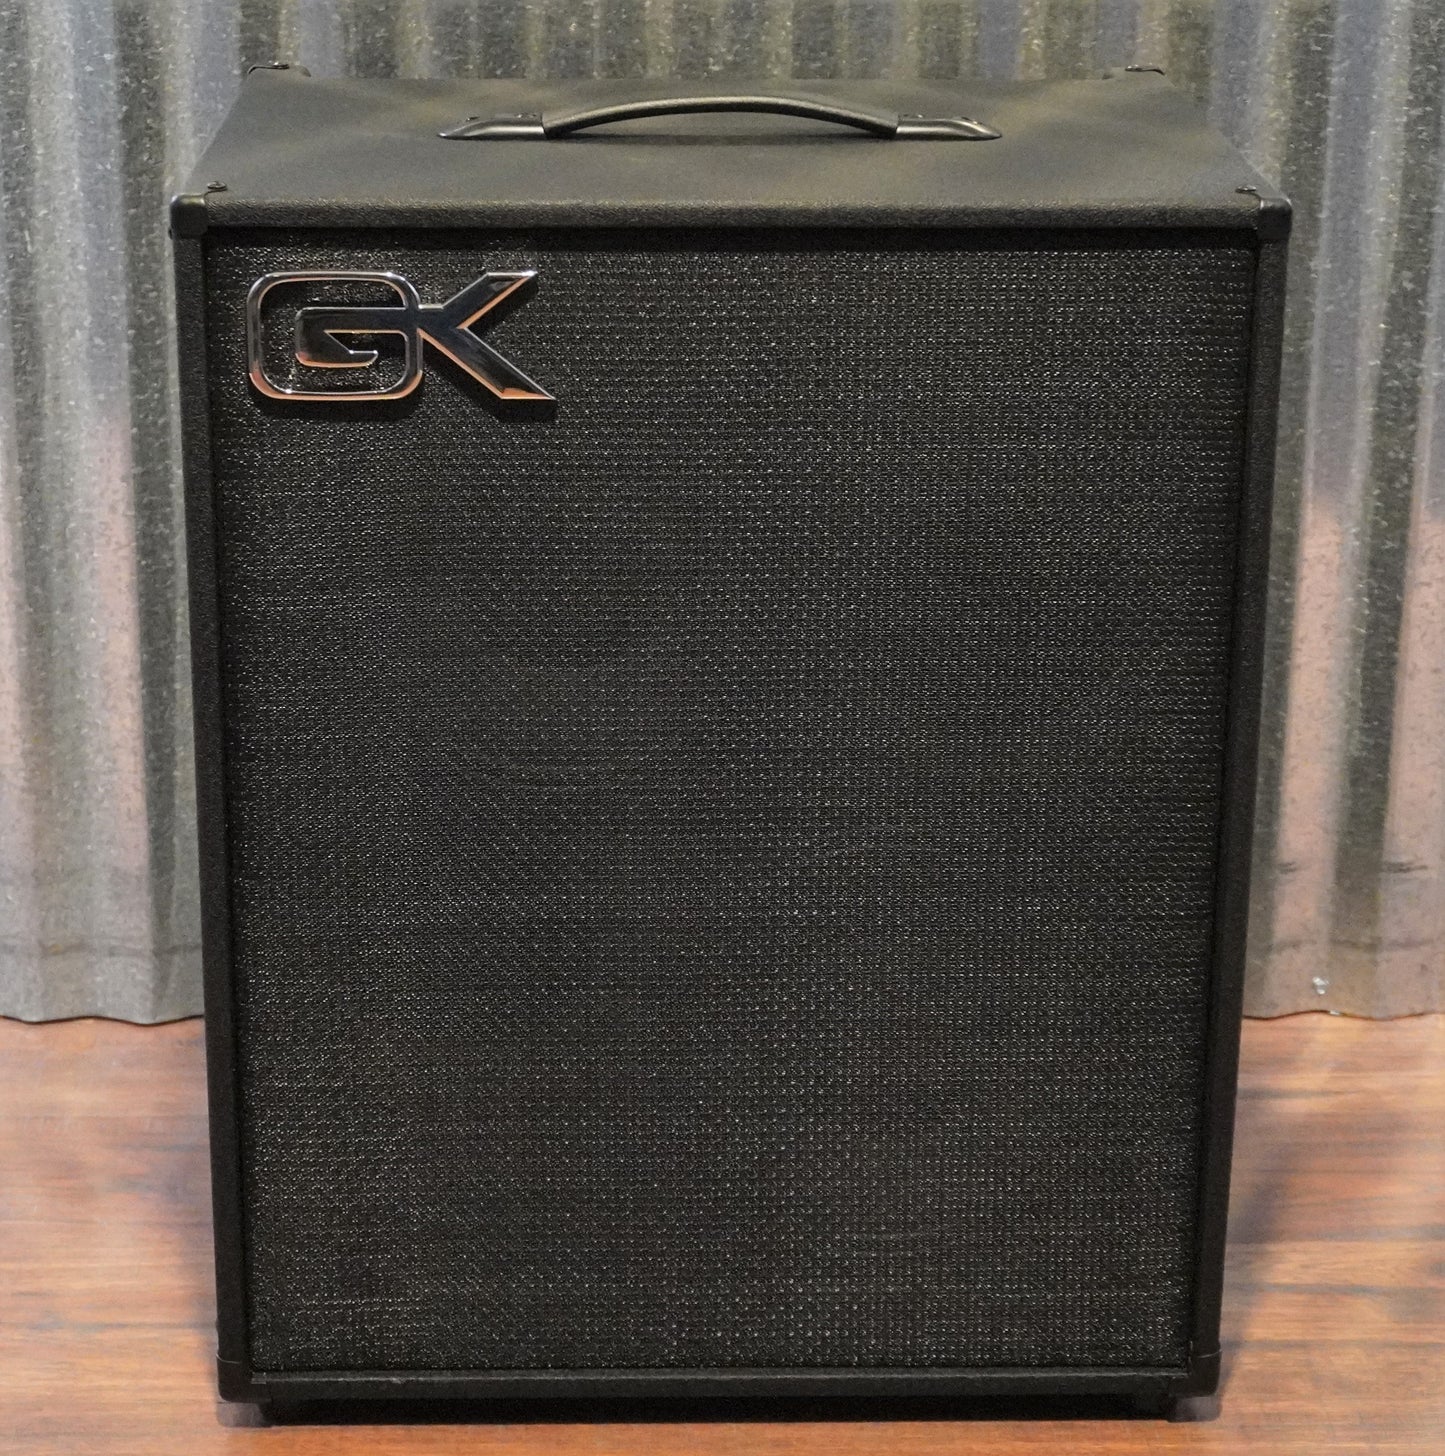 Gallien-Krueger GK MB 210-II 2x10" 500 Watt Ultra Light Bass Combo Amplifier